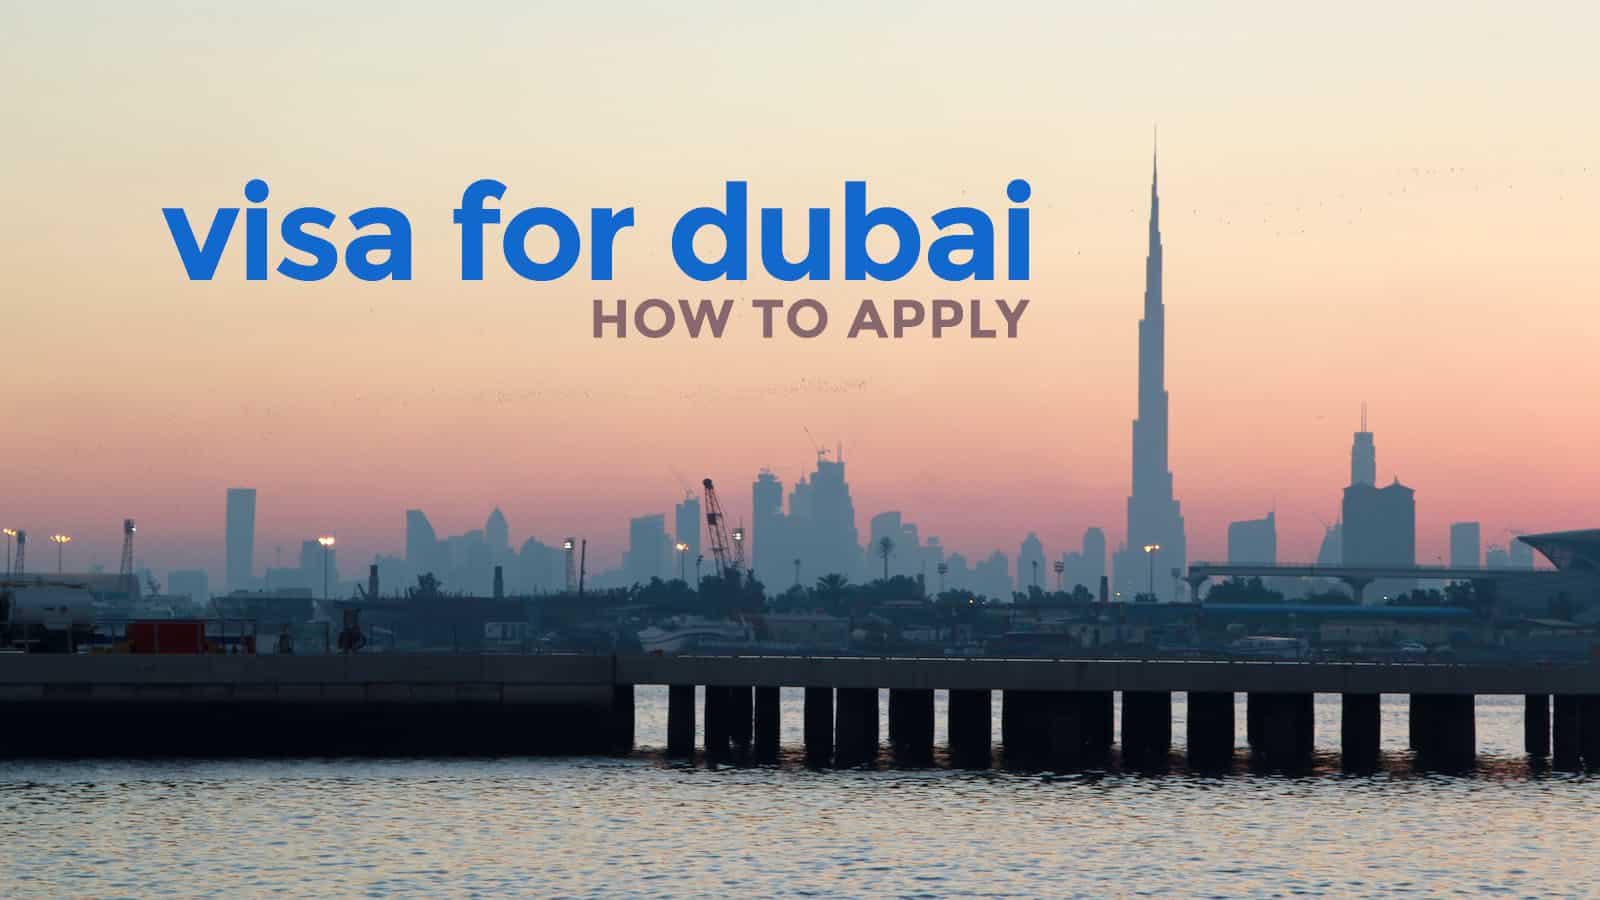 Hướng dẫn xin visa đi Dubai du lịch công tác mới năm 2021